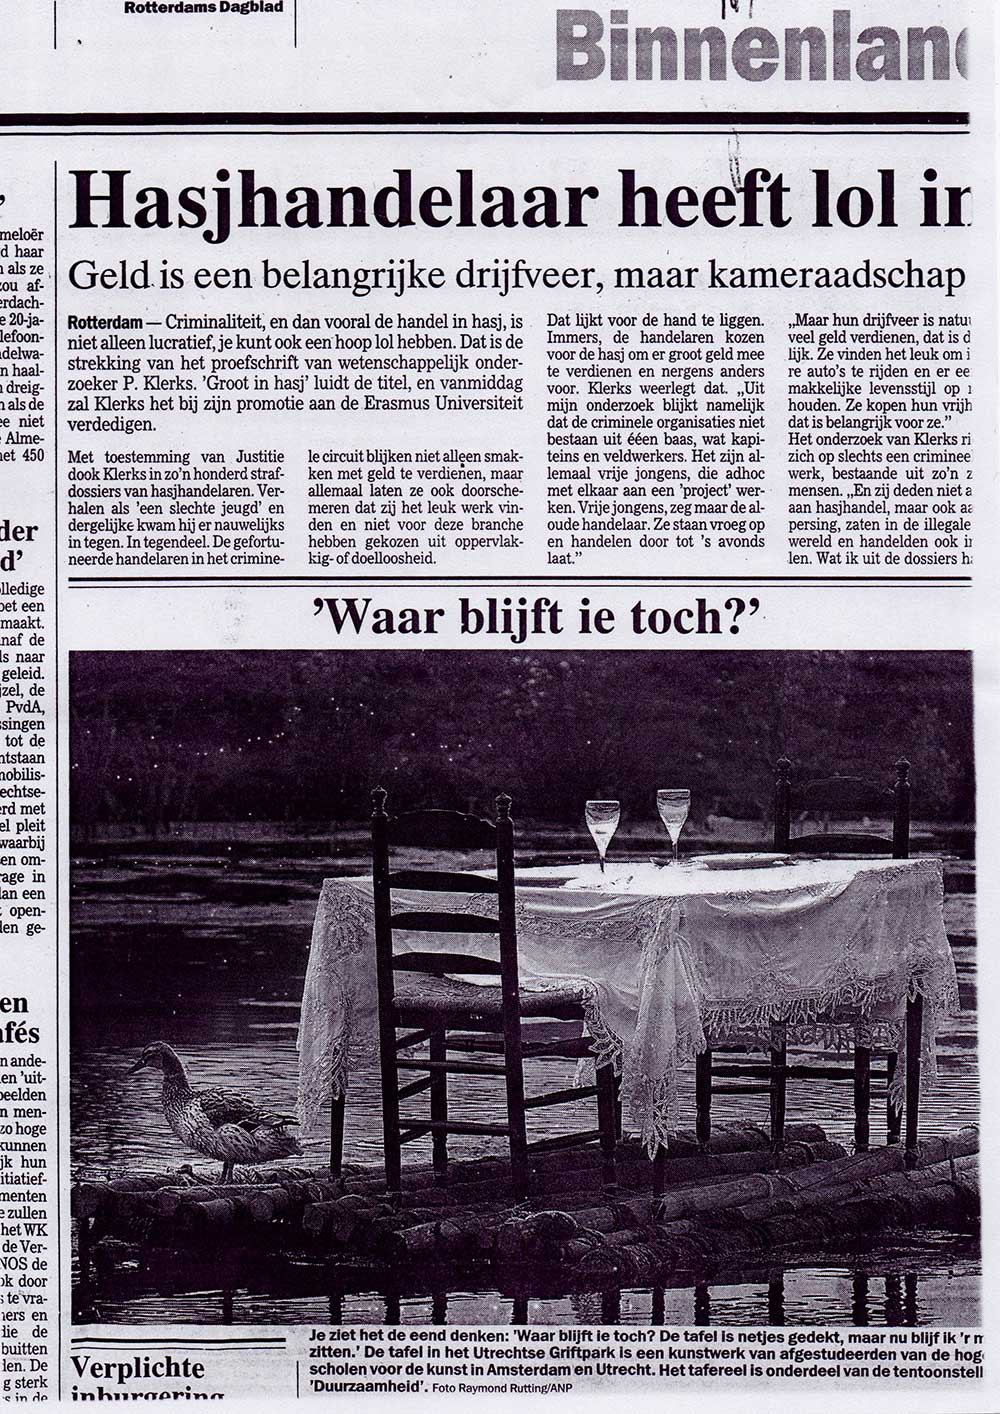 rotterdamsdagblad-2000-sm